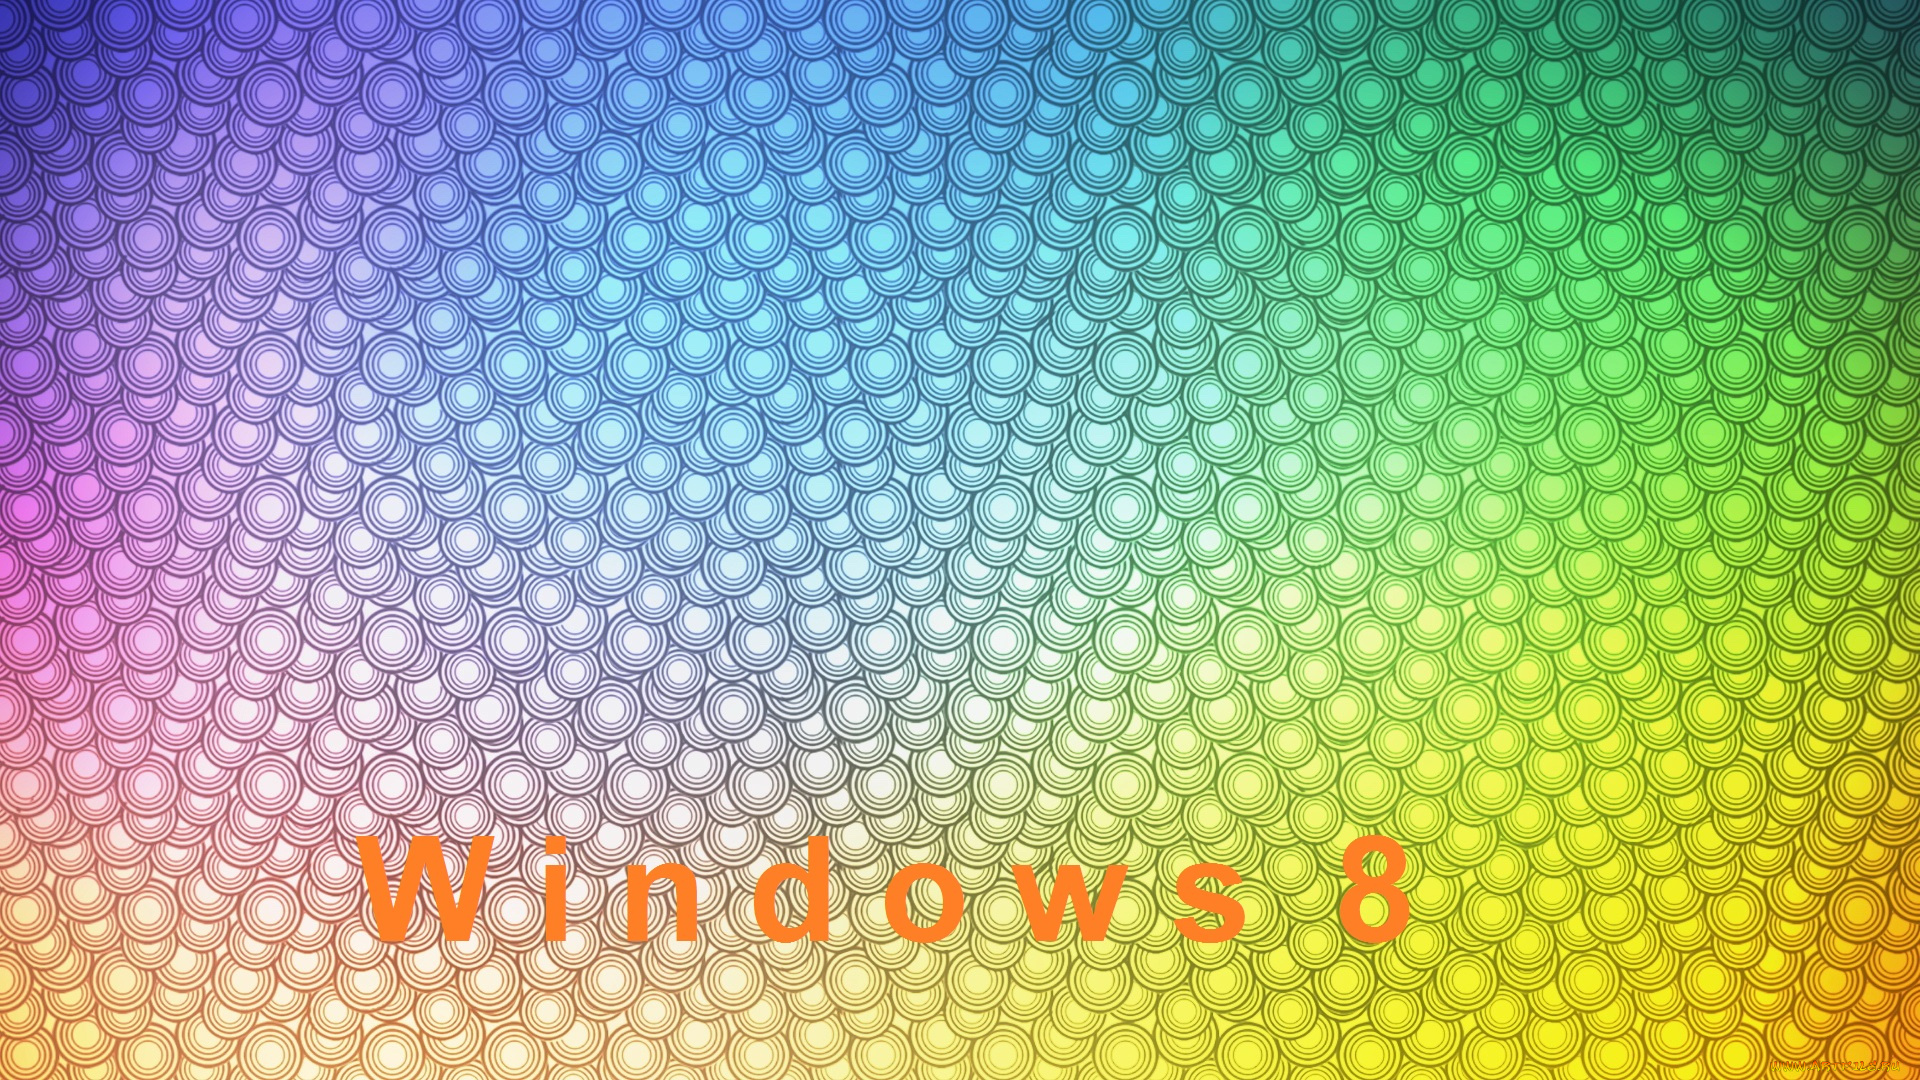 компьютеры, windows